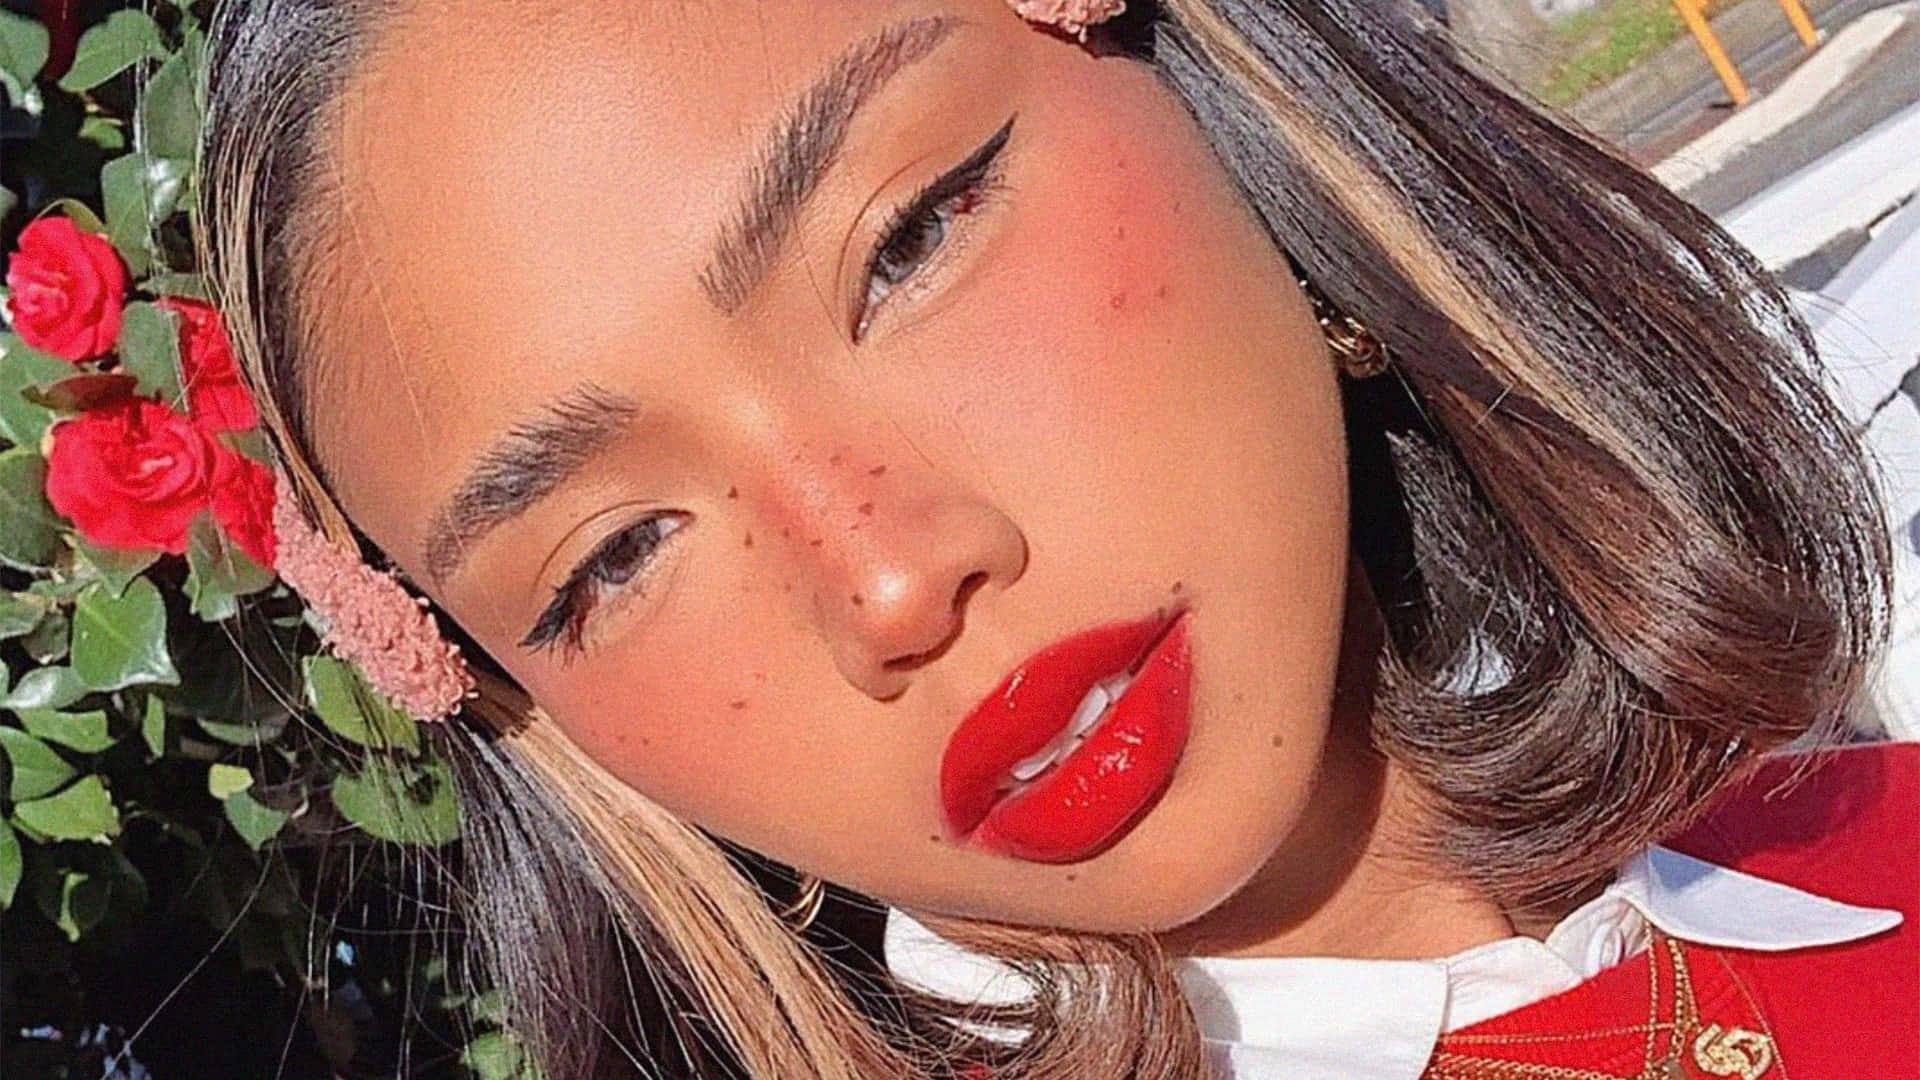 Glamorous Red Lipstick Girl Aesthetic.jpg Wallpaper